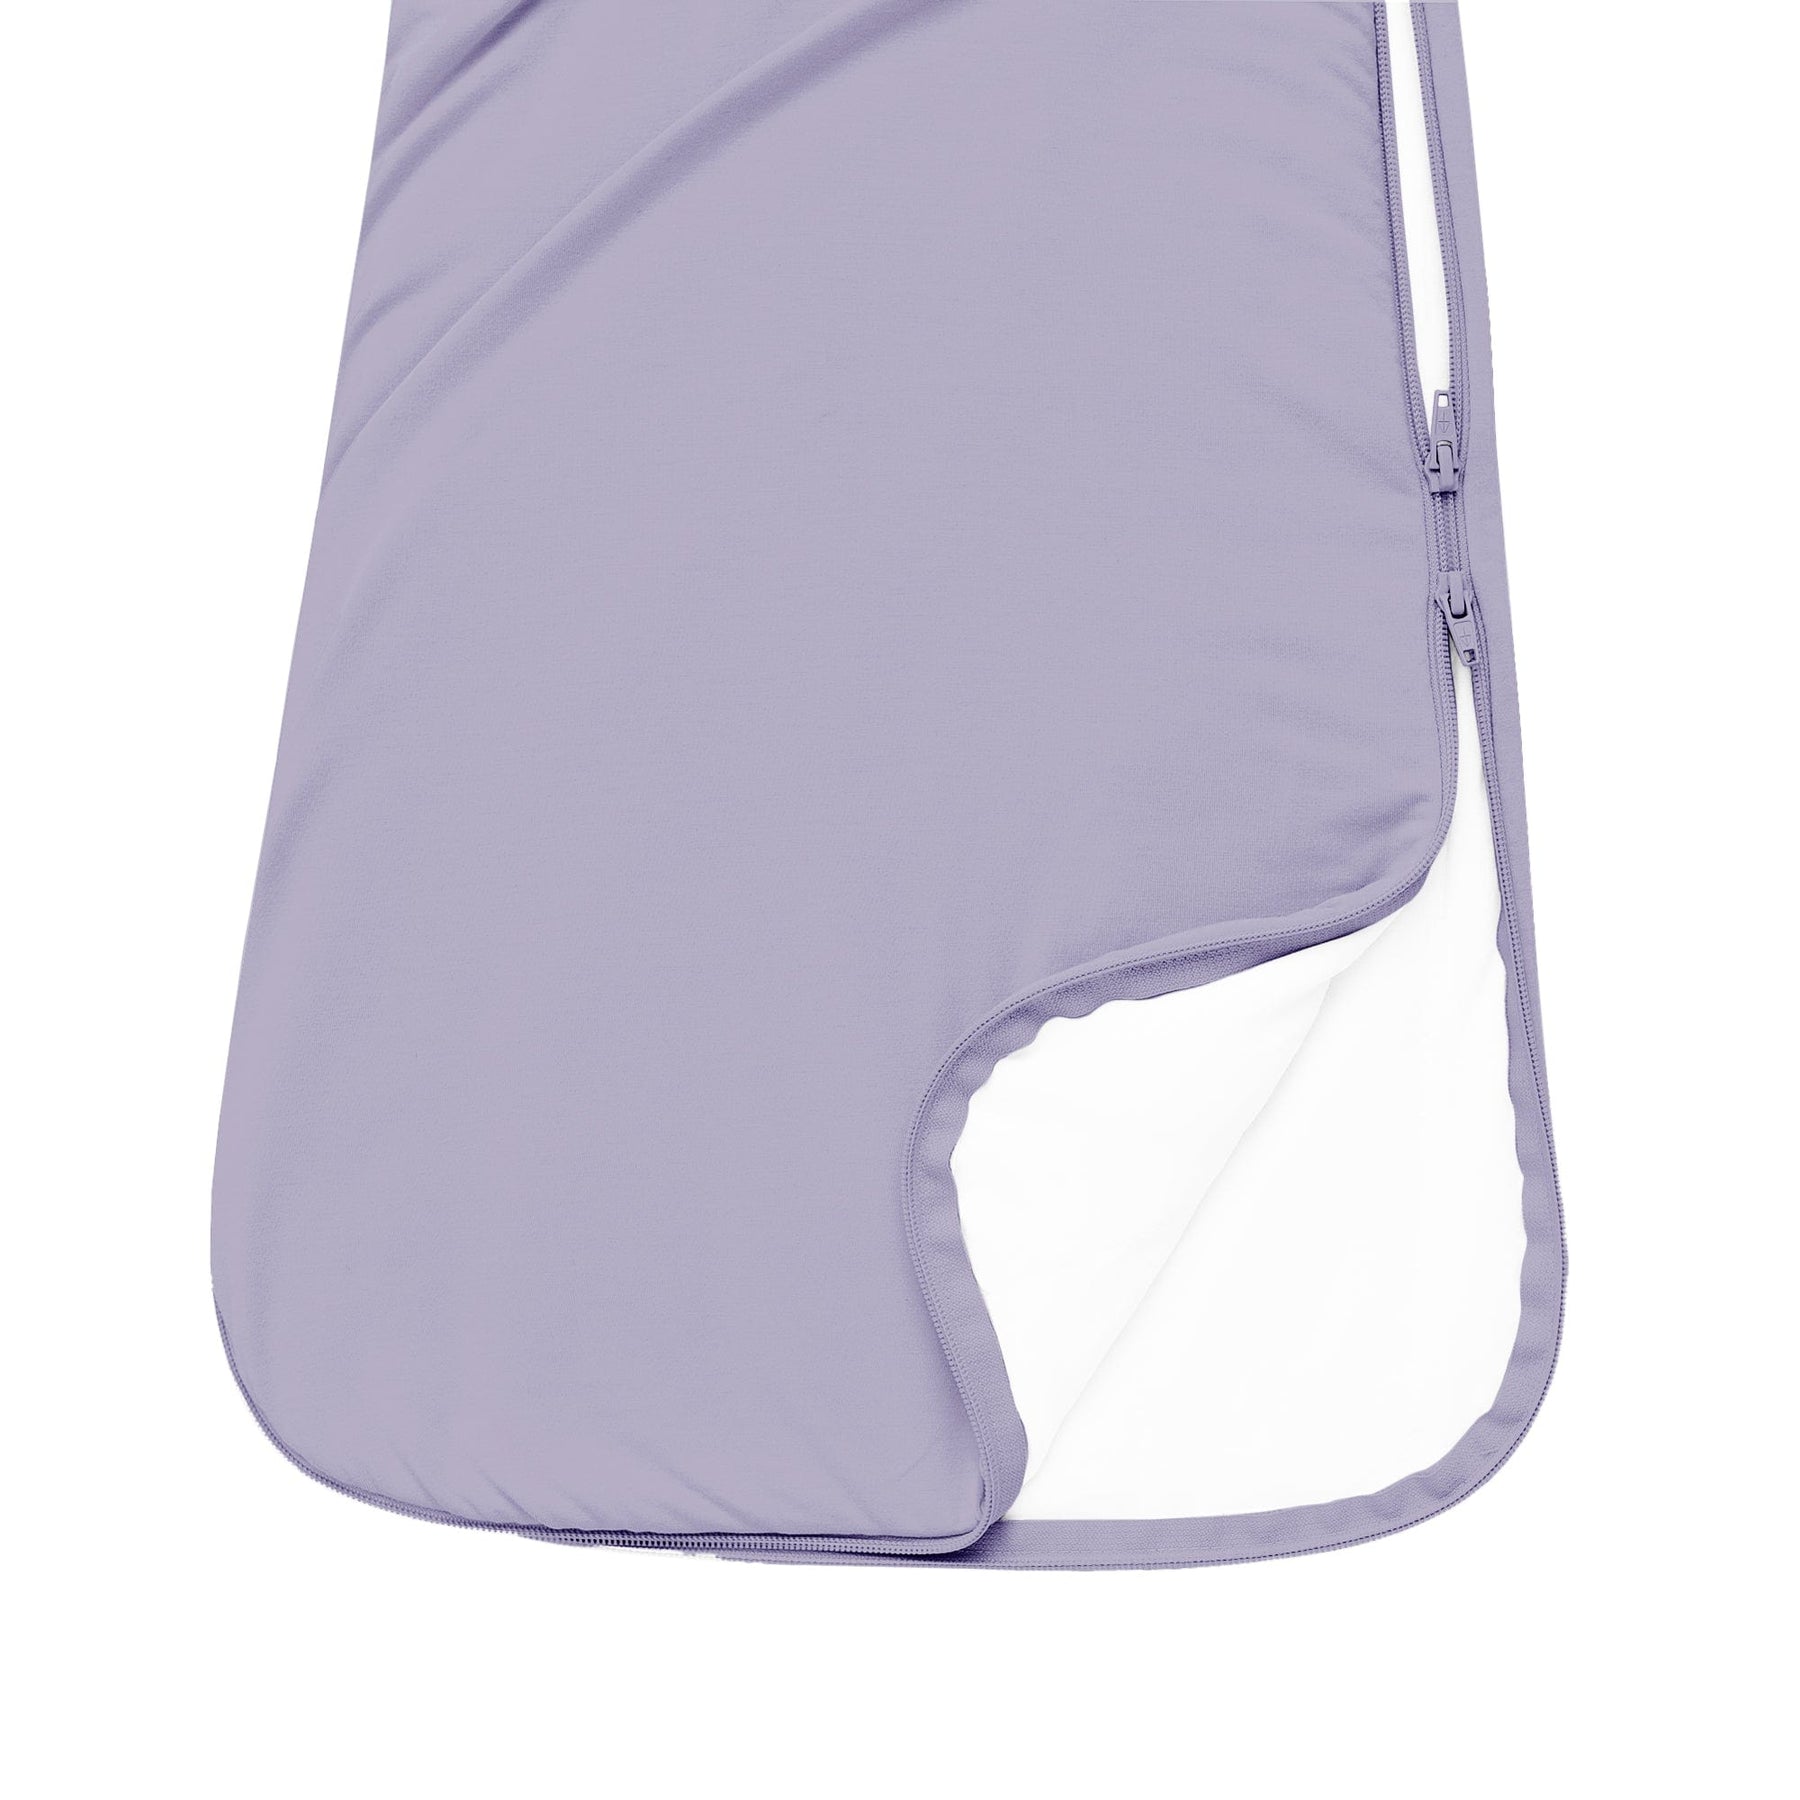 Sleep Bag in Taro 1.0